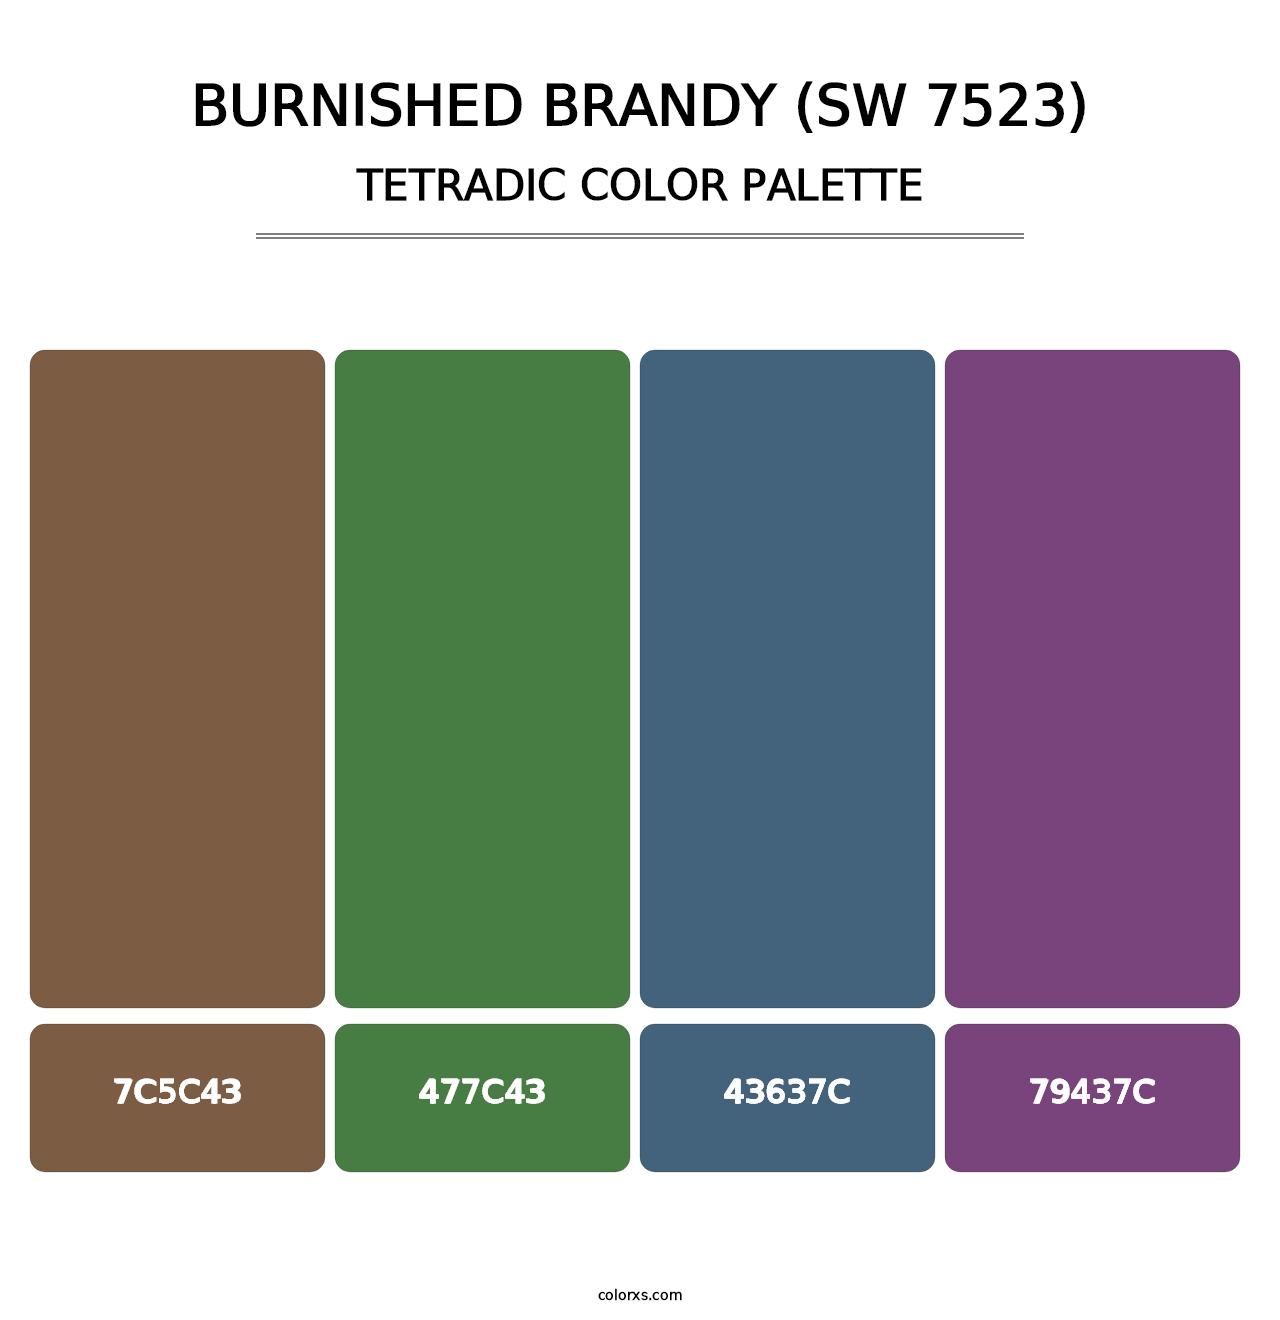 Burnished Brandy (SW 7523) - Tetradic Color Palette